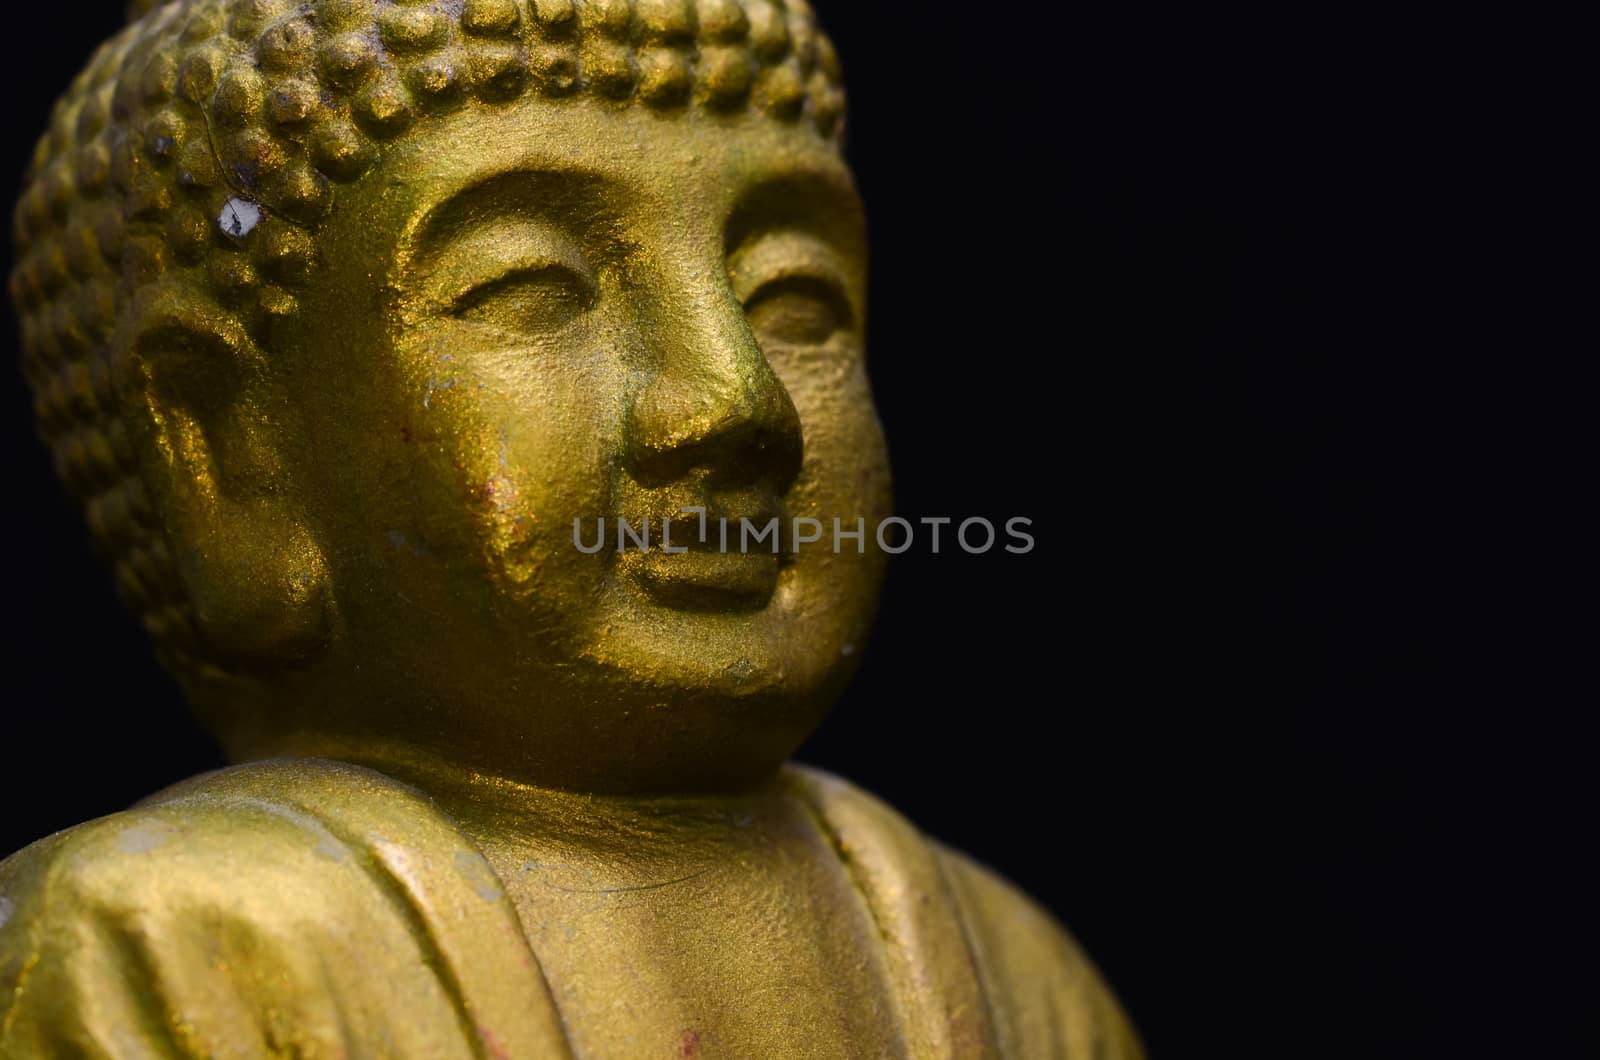 Little Golden Buddha Image by underworld